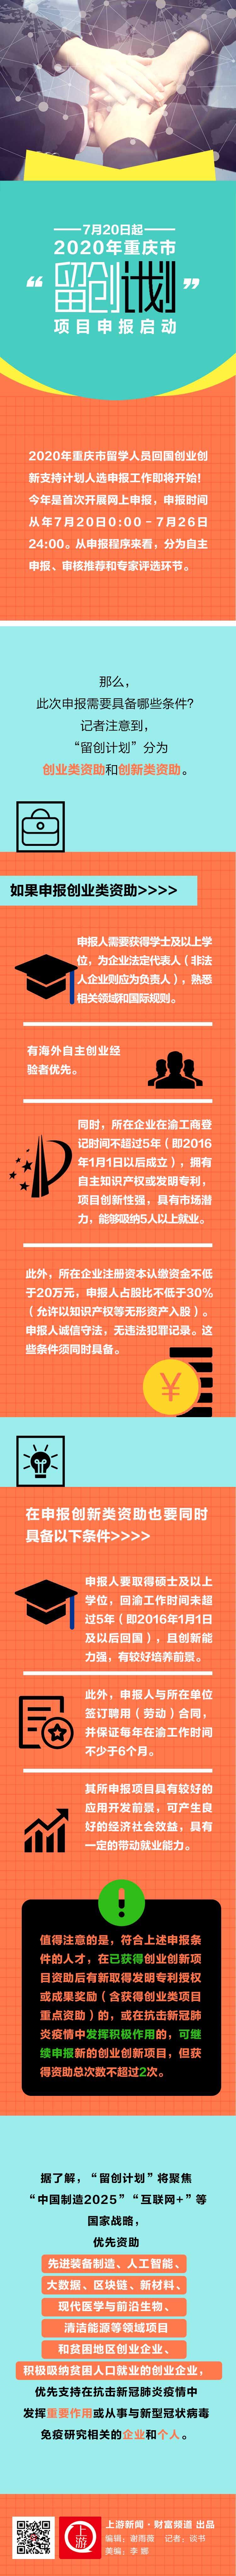 7月日起 年重庆市 留创计划 项目申报启动 上游新闻汇聚向上的力量